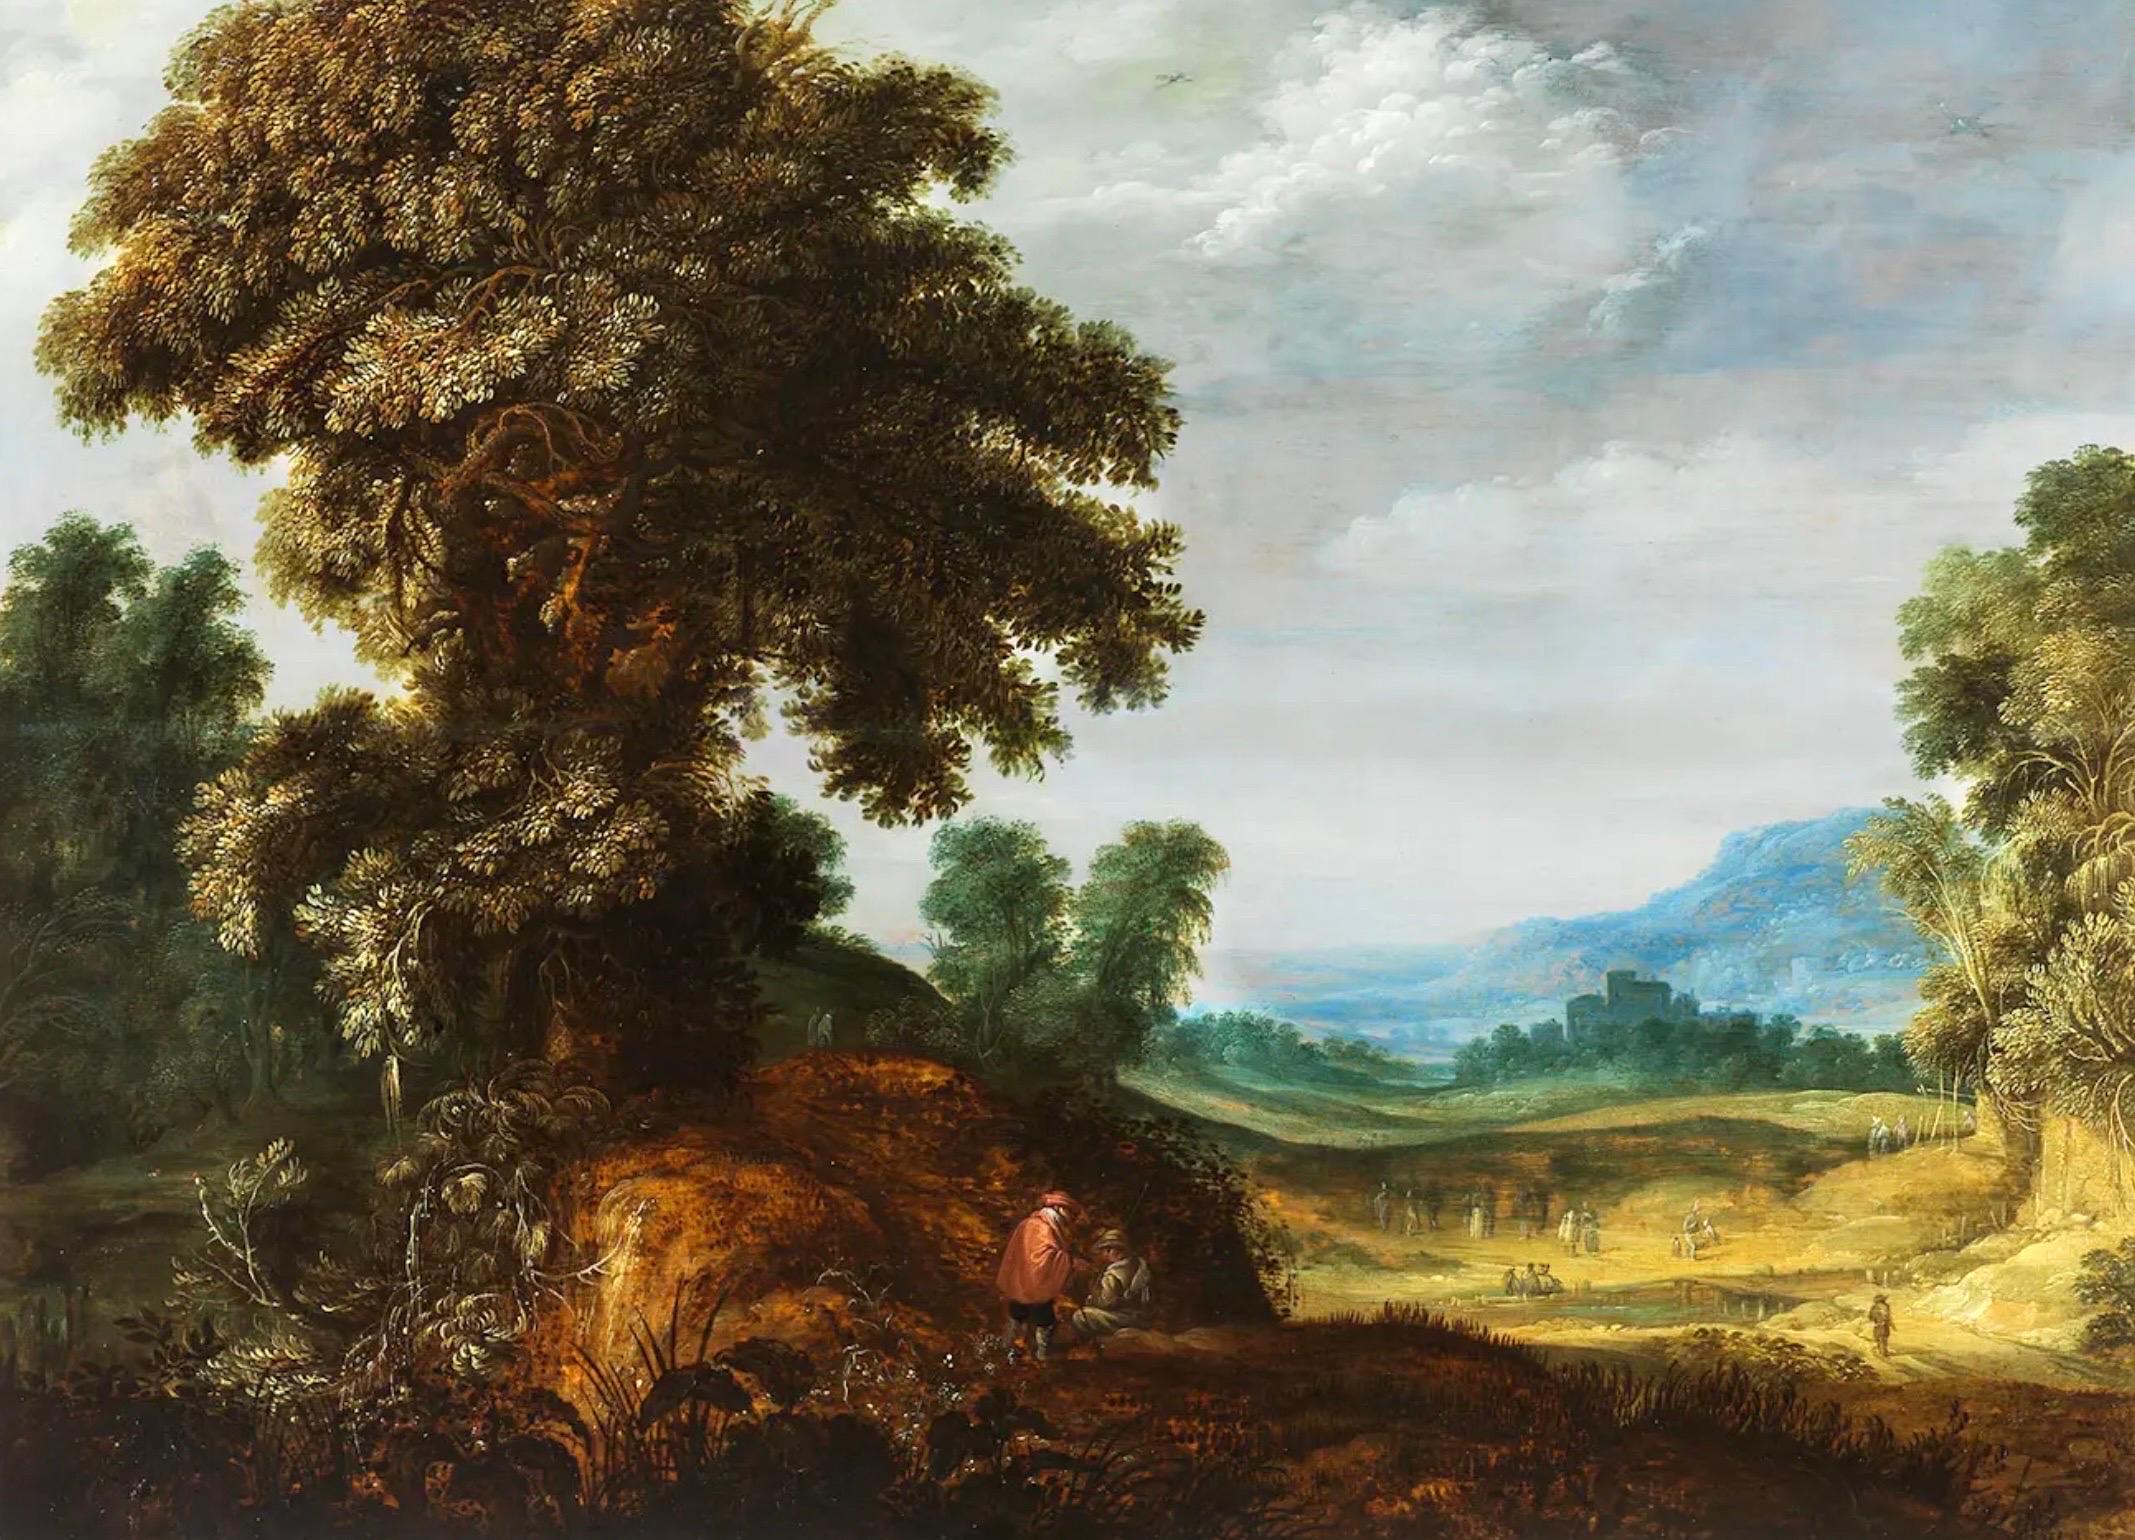 Figurative Painting Alexander Keirincx - Peinture de maître flamande du 17e siècle - Vaste paysage avec un chêne majestueux